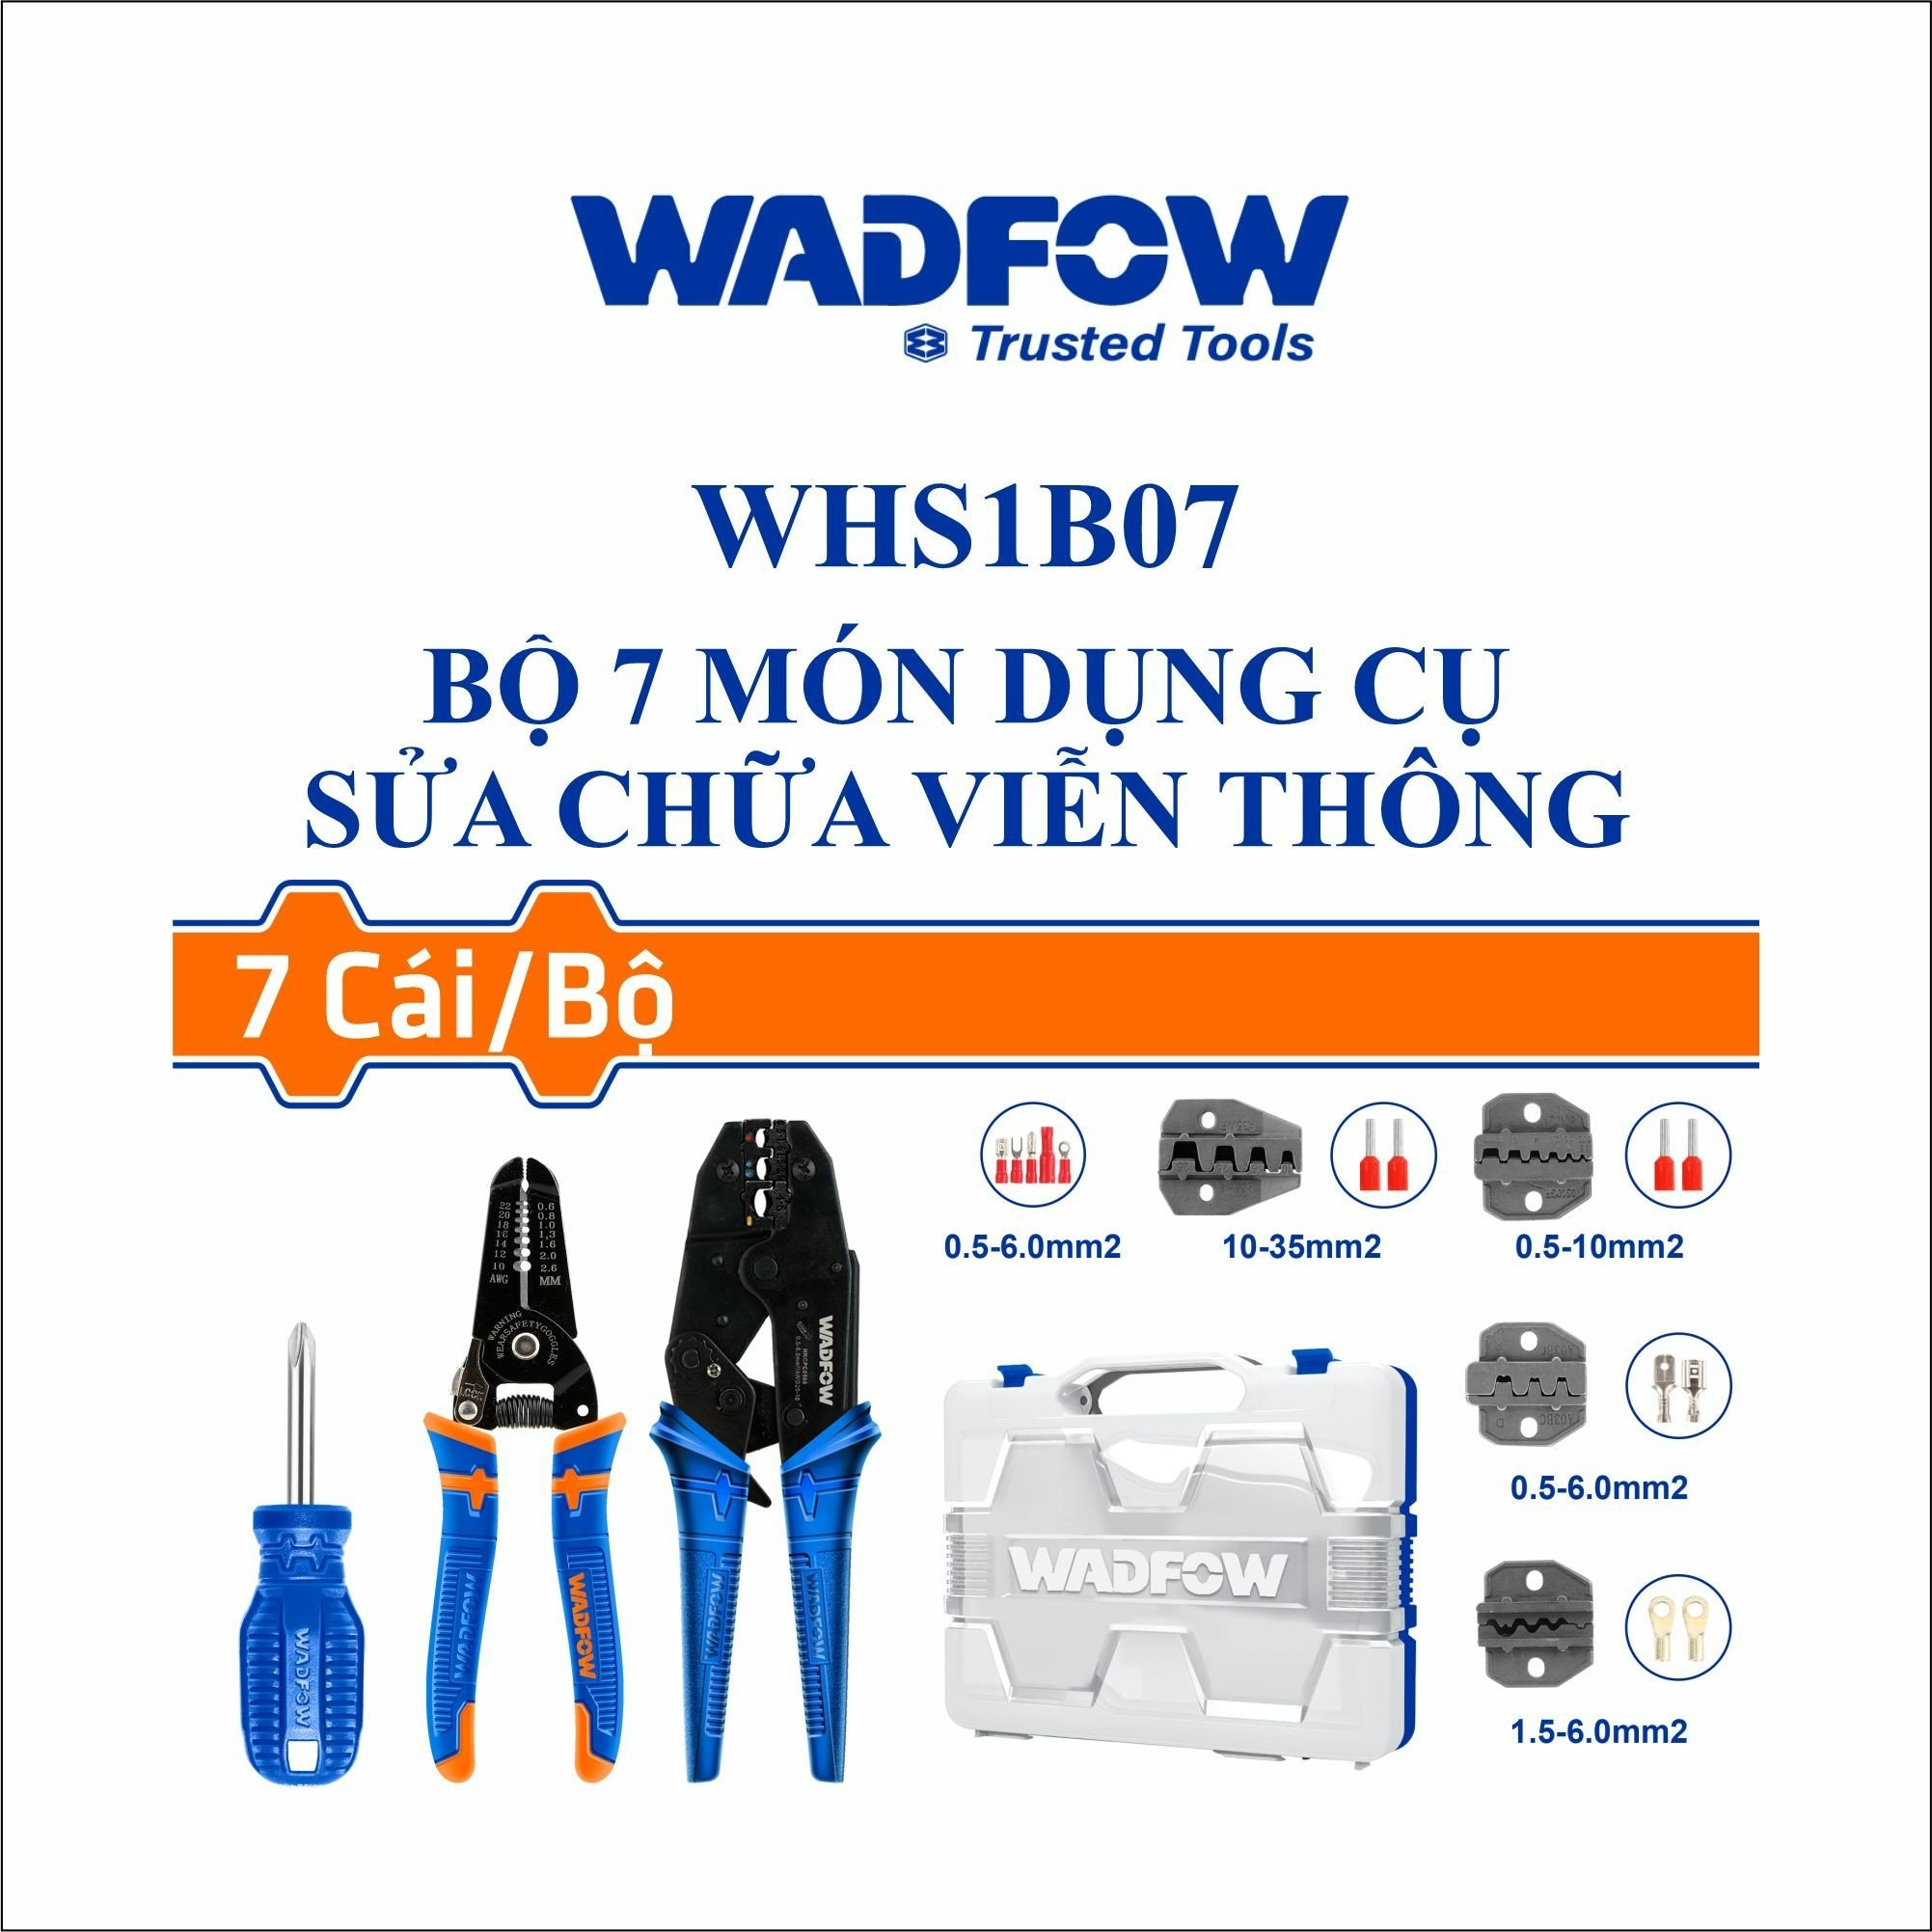 Bộ dụng cụ 7 món sửa chữa viễn thông WADFOW WHS1B07